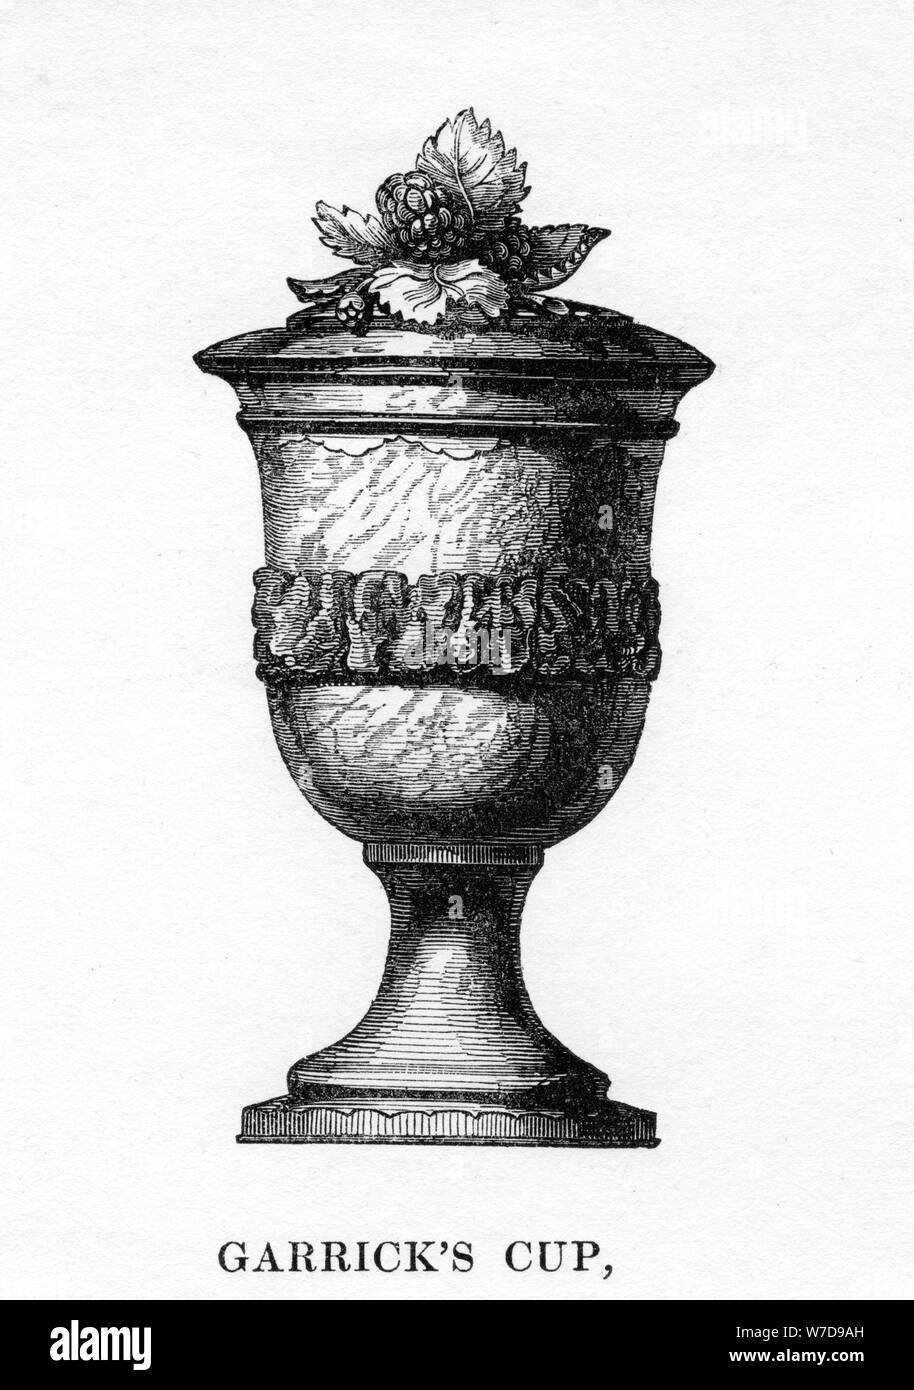 Garrick's Cup, sculpté de mûrier de Shakespeare, xviiie siècle, (1840). Artiste : Inconnu Banque D'Images